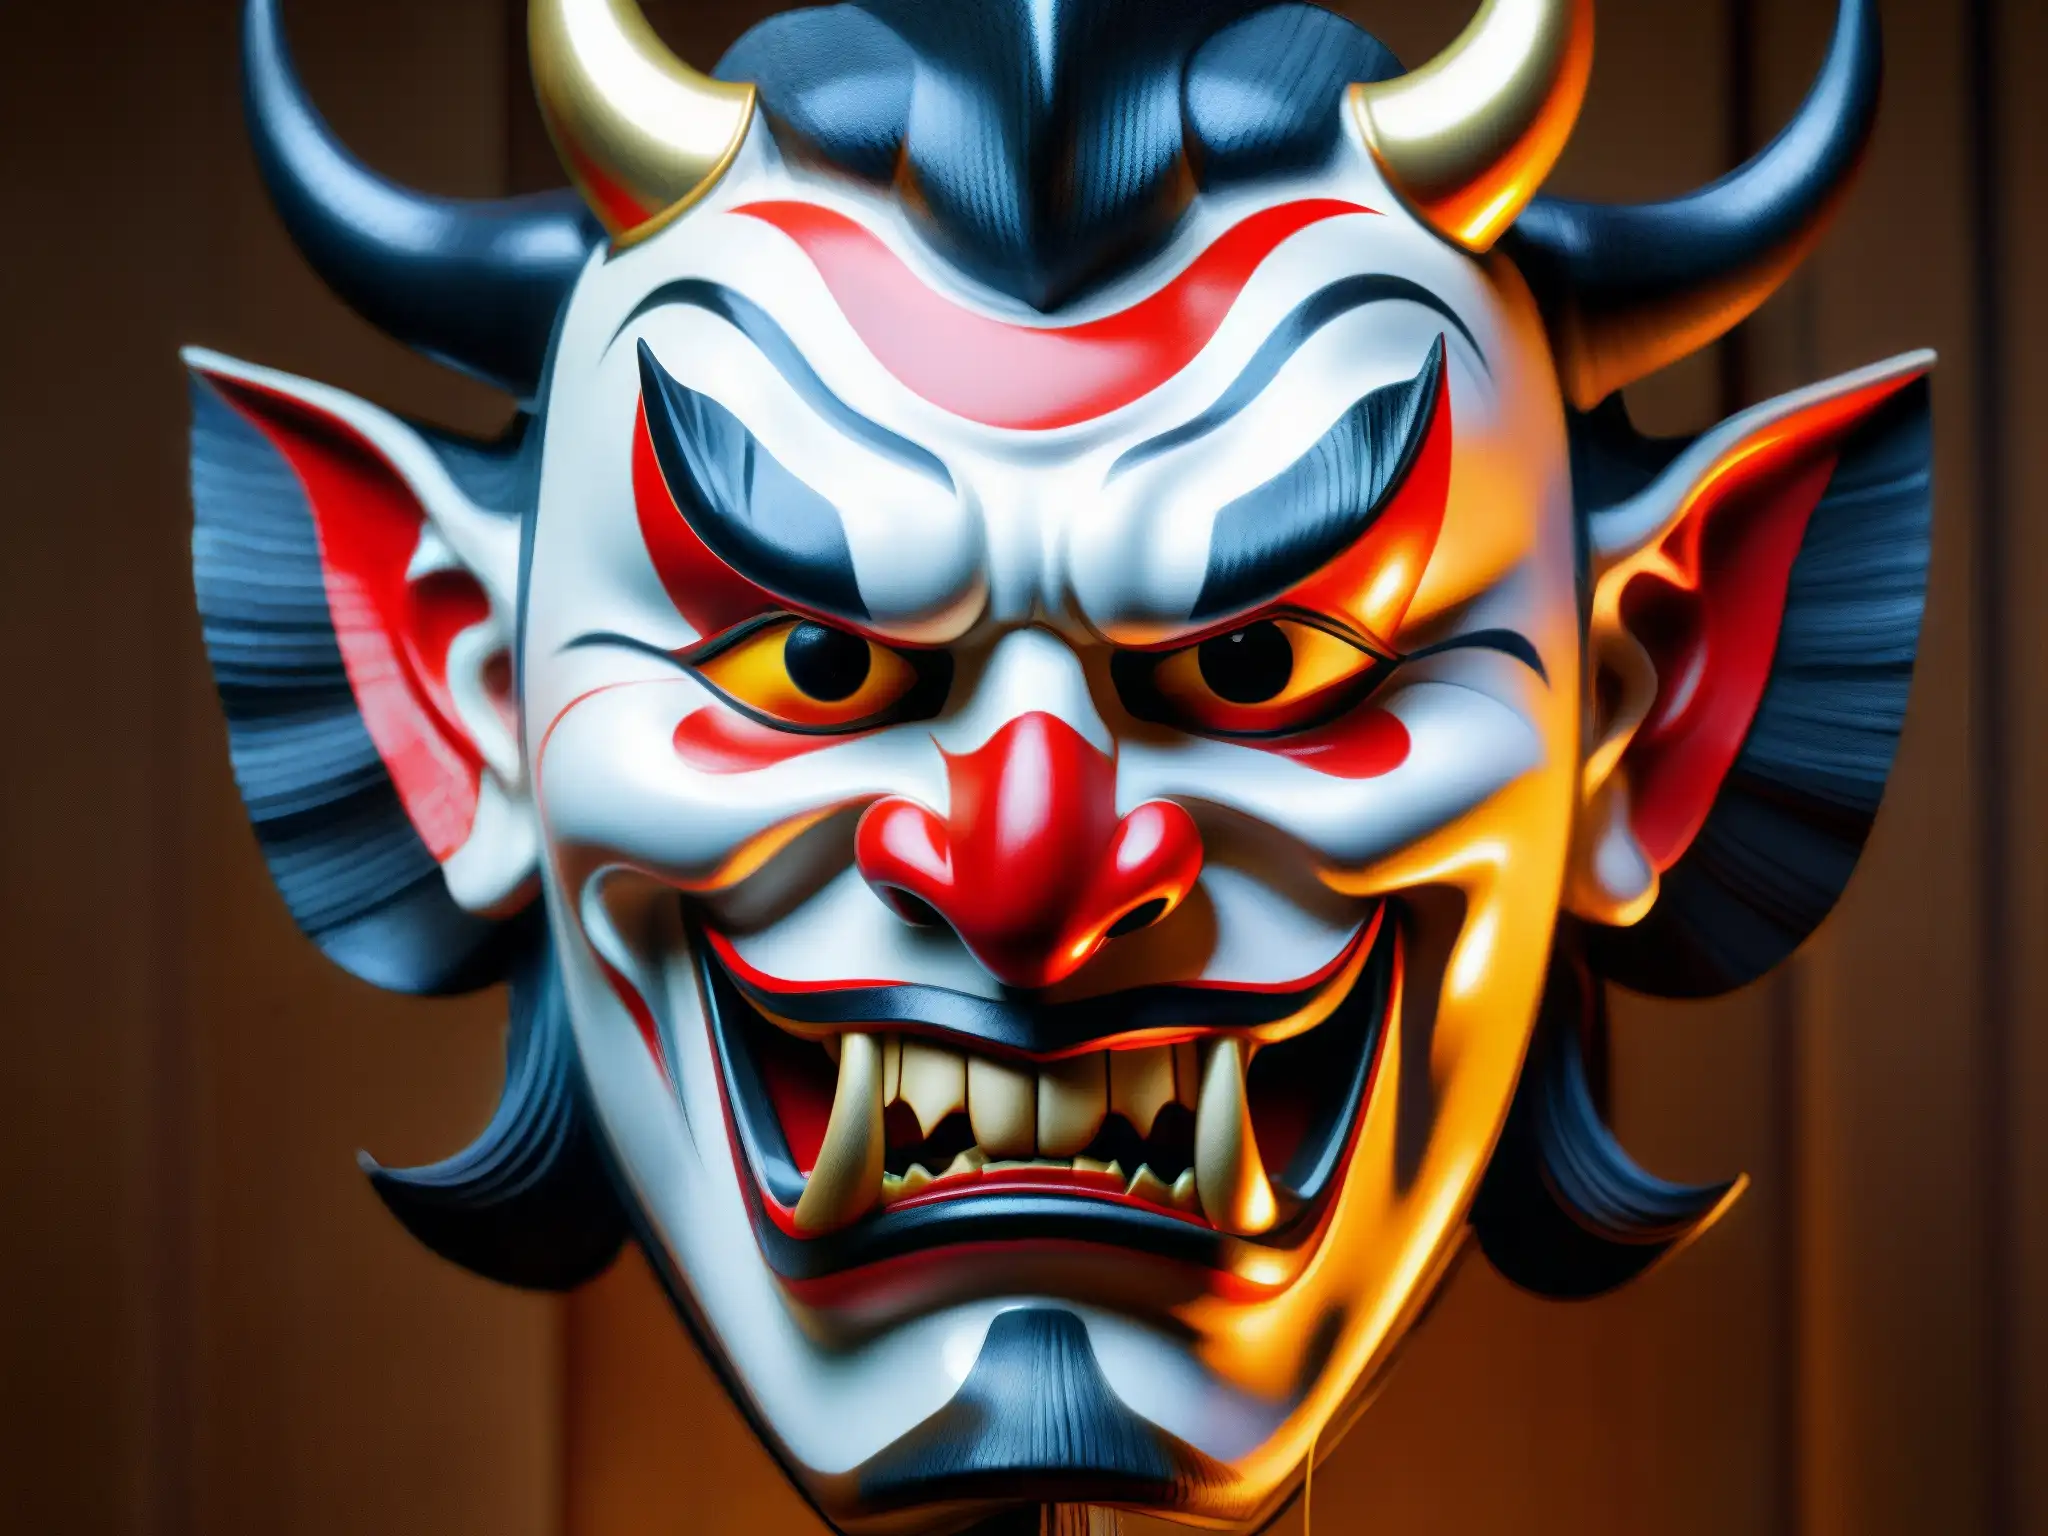 Una máscara tradicional japonesa Noh del demonio 'Oni' con colores rojos y negros, detalle intrincado y expresión inquietante, que evoca la historia del Hombre del Saco en la cultura japonesa